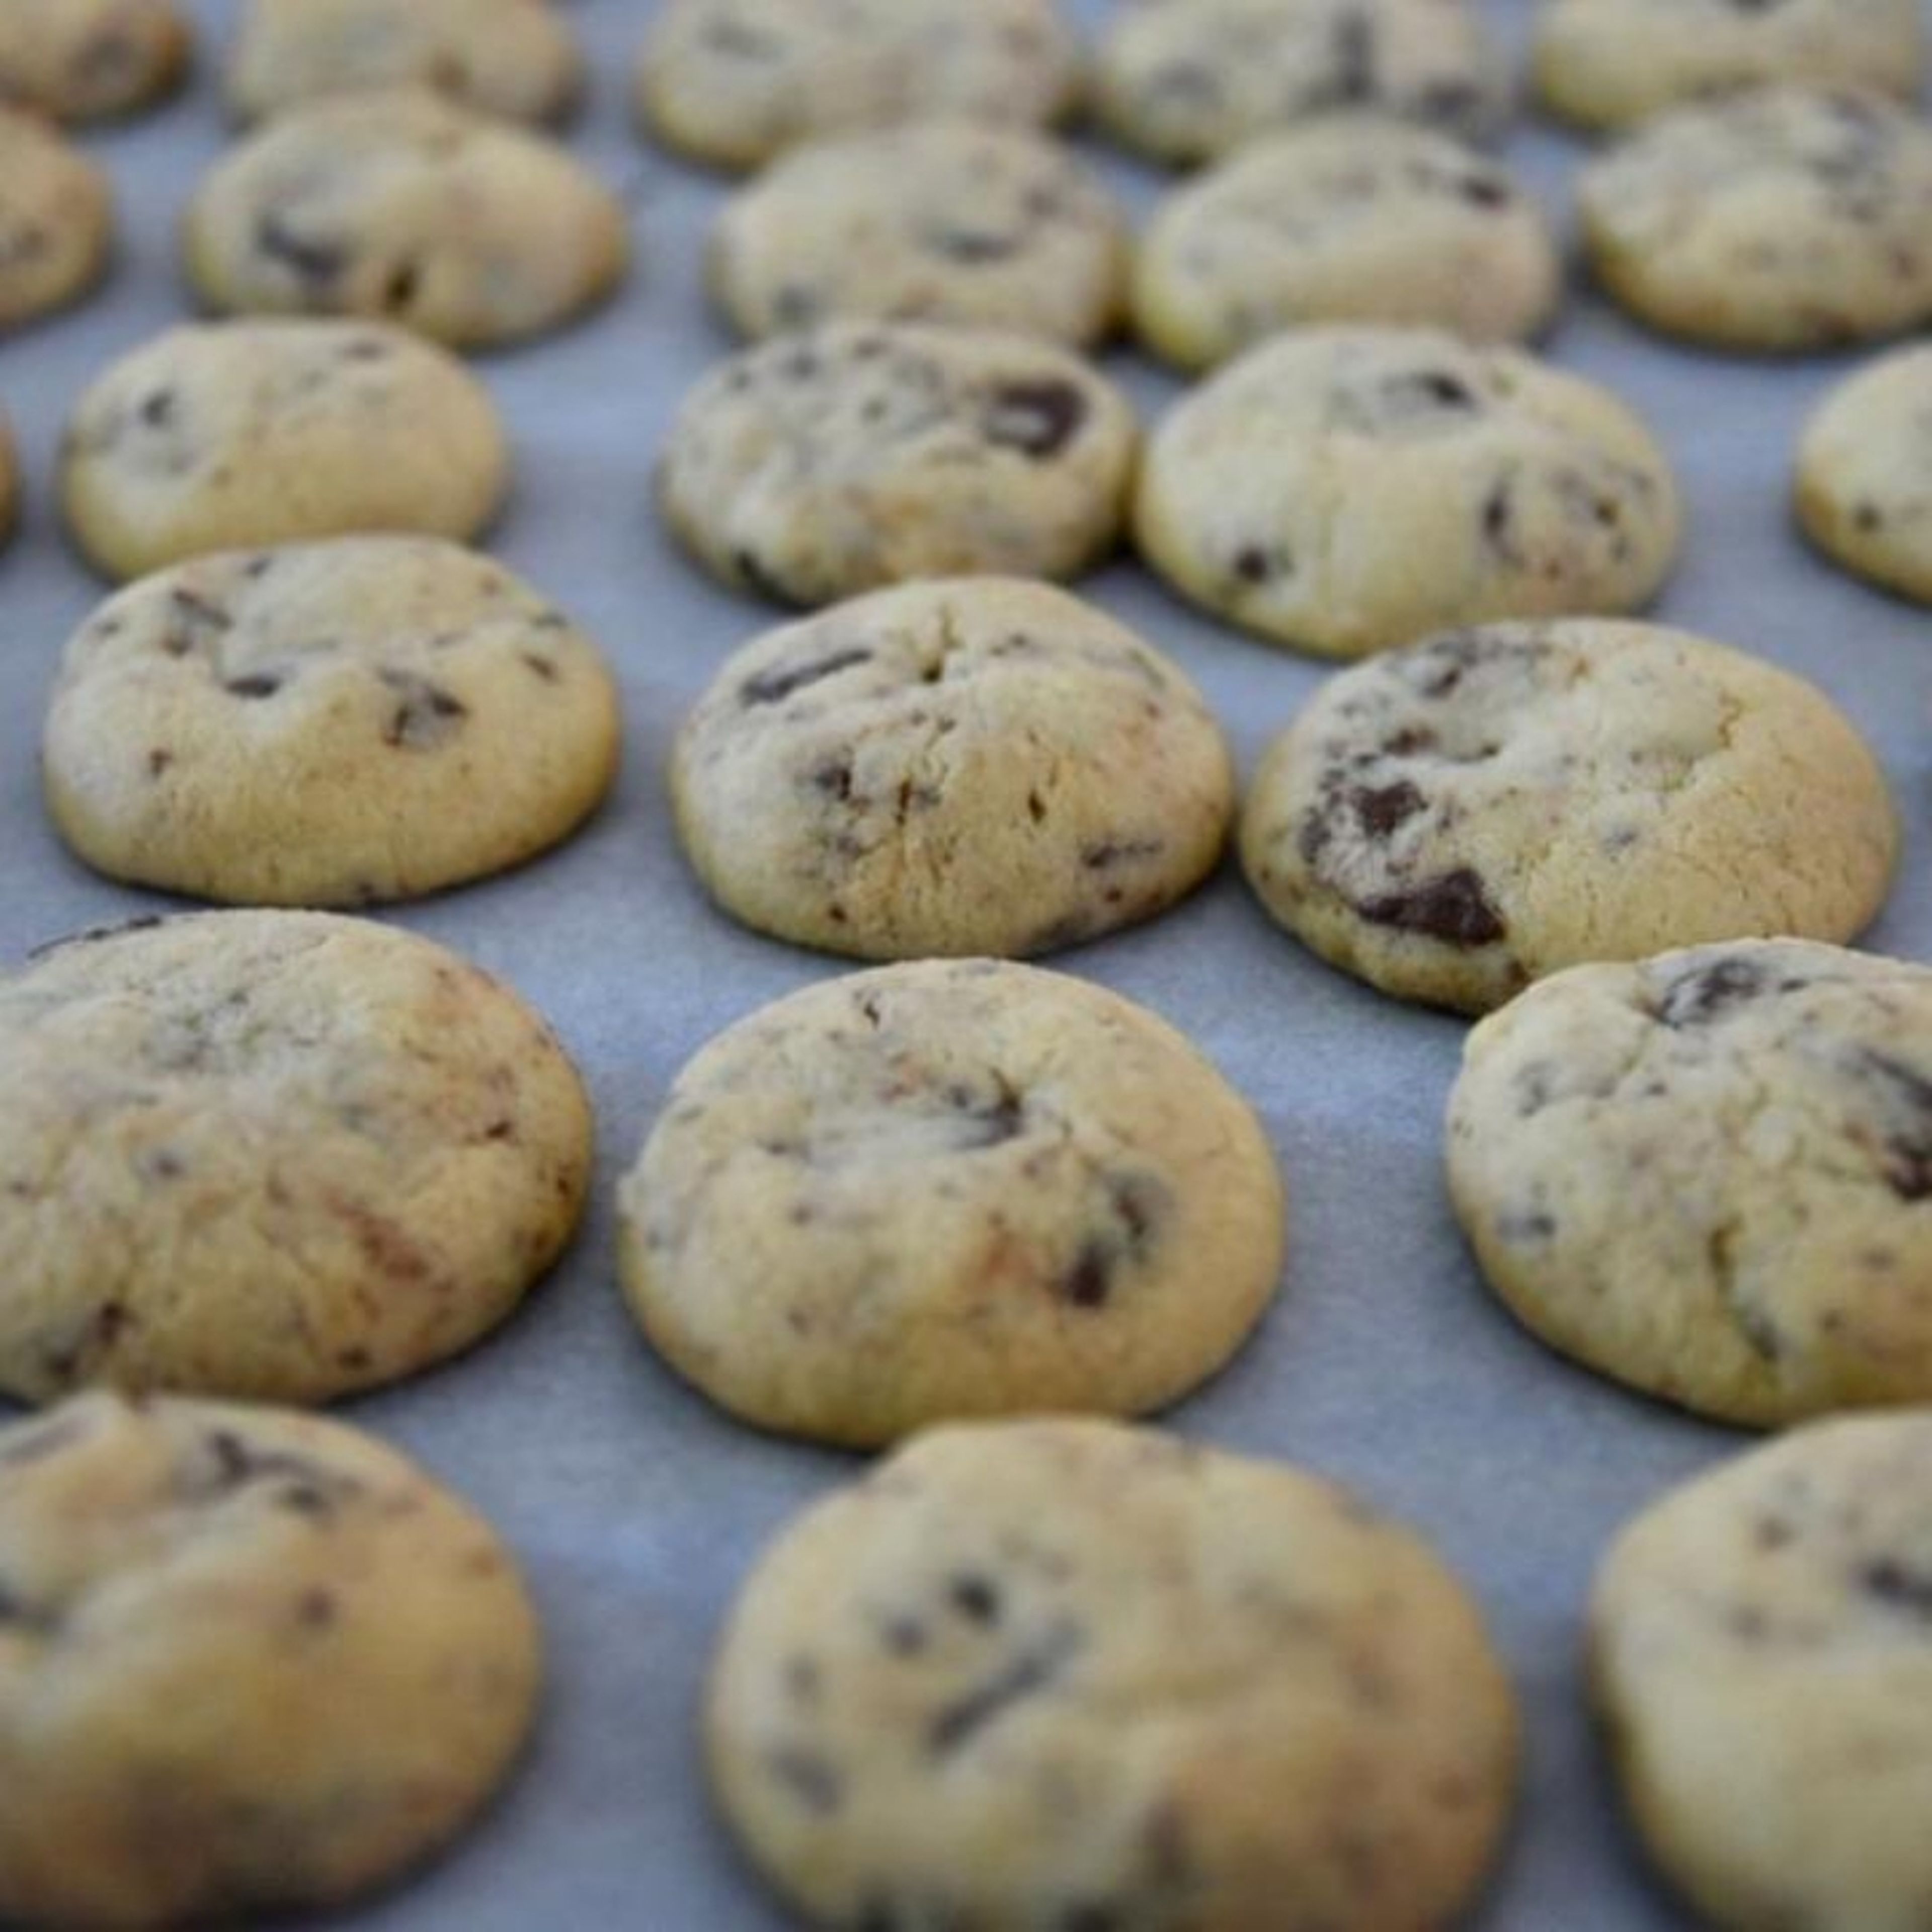 Die Backbleche in den Ofen schieben und Kekse bis zur gewünschten Bräunung backen (15-20 Minuten).